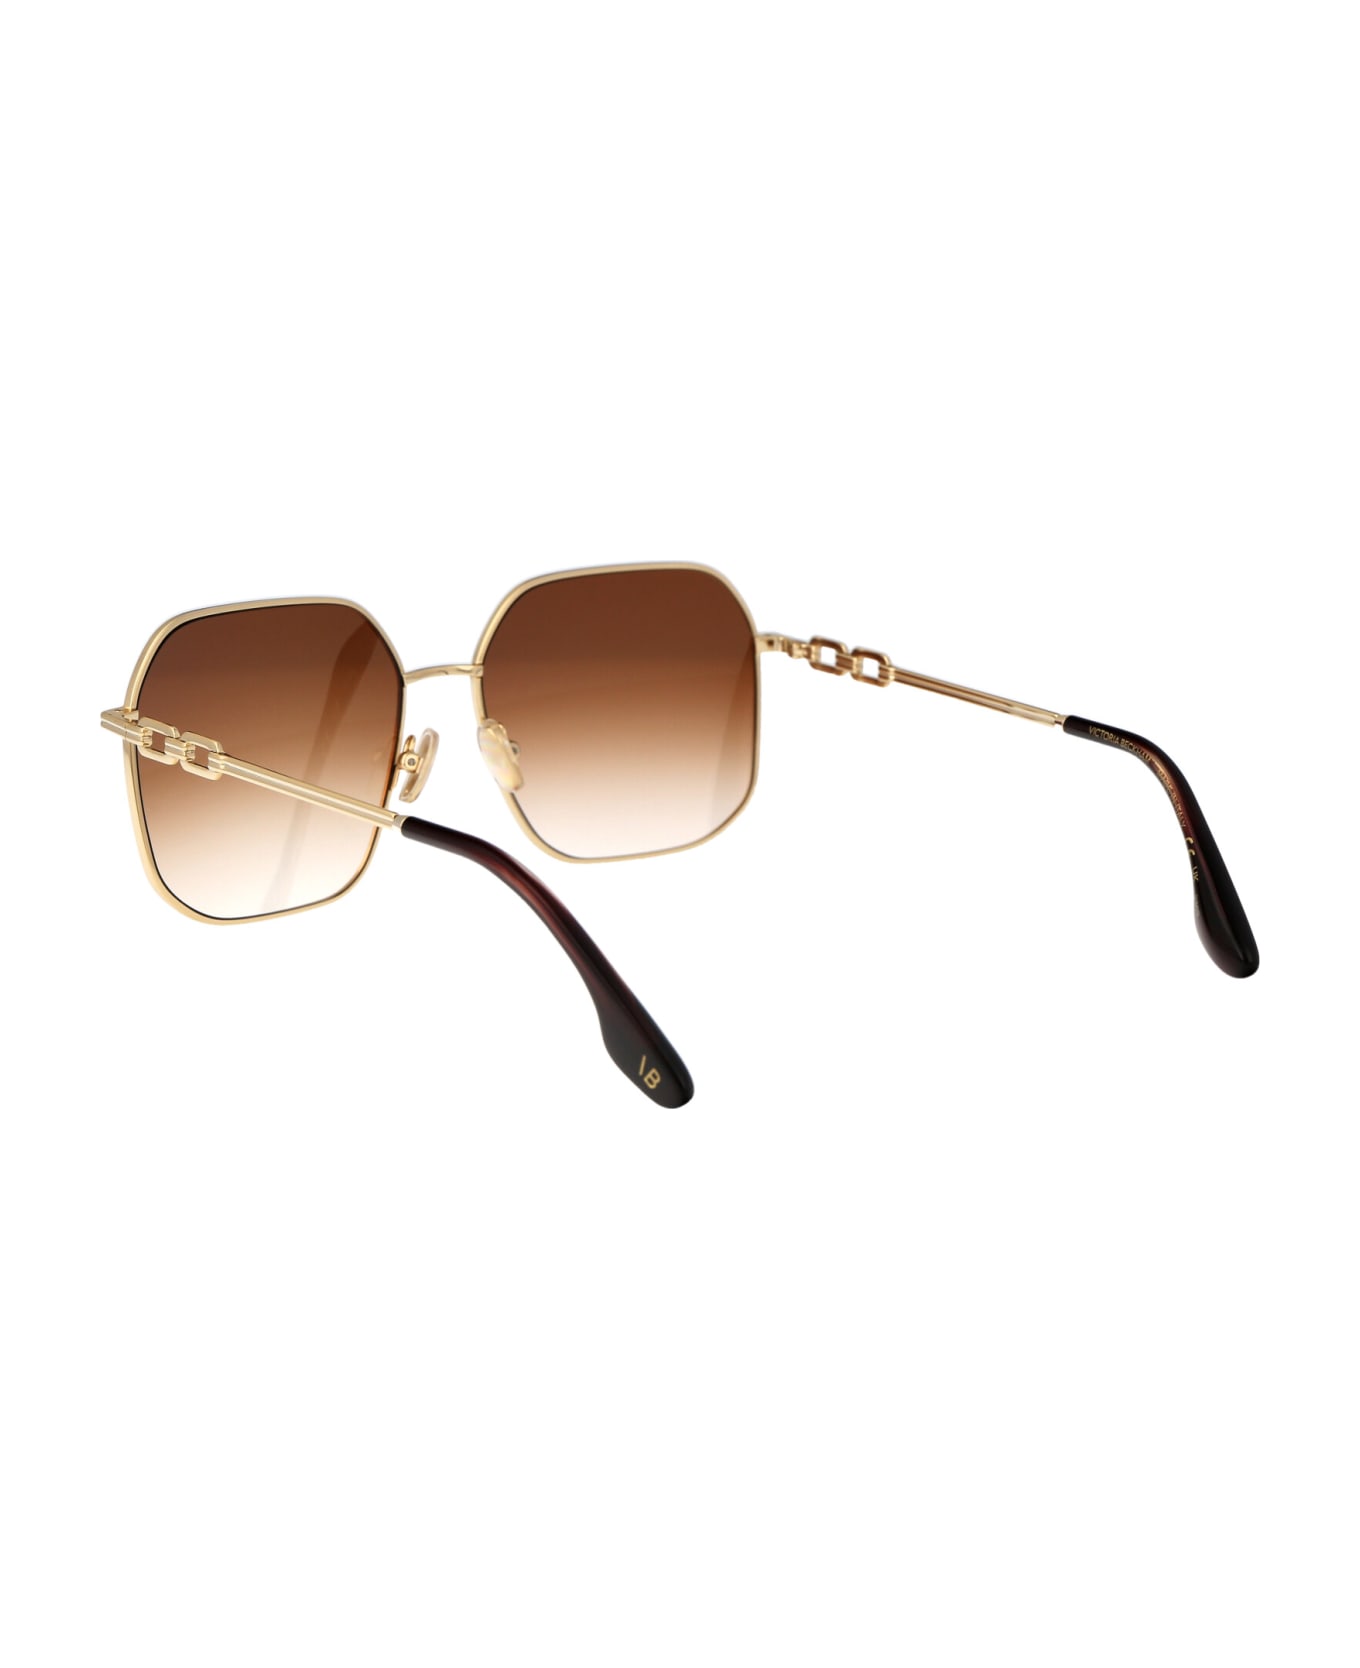 Victoria Beckham Vb232s Sunglasses - 723 GOLD/HONEY